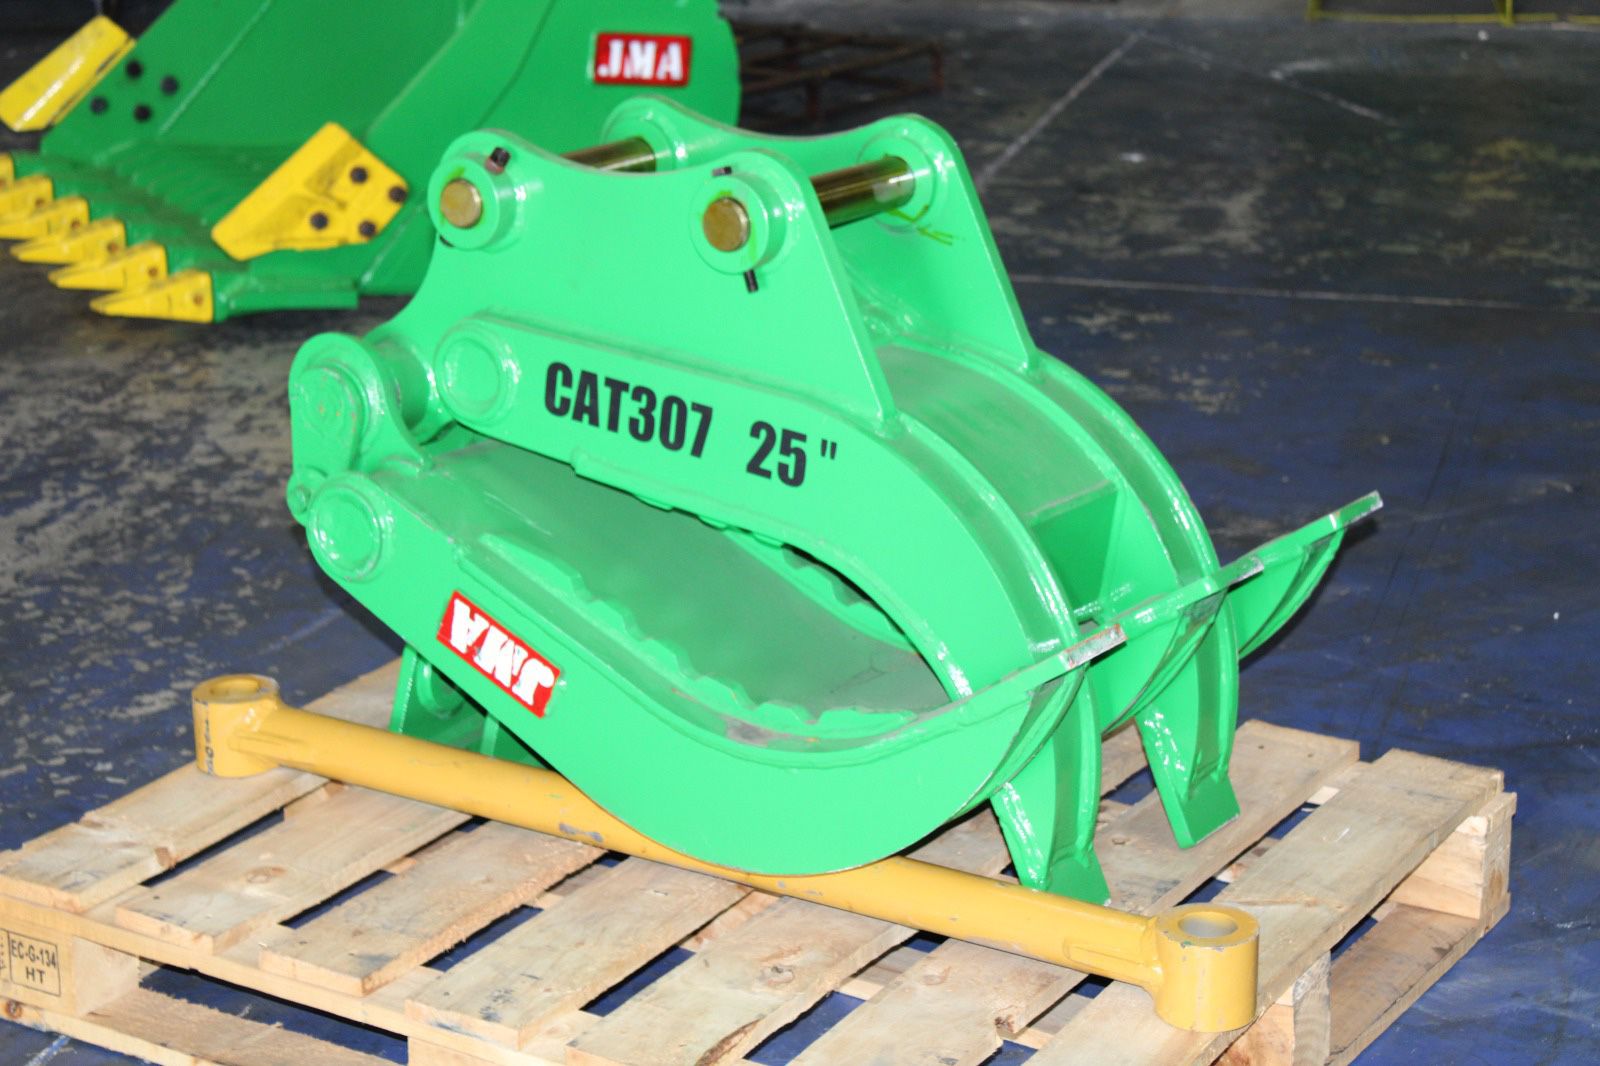 Mini Excavator Caterpillar CAT 307 / 308 Manual Grapple / Scrap Salvage 25 Inches Width.